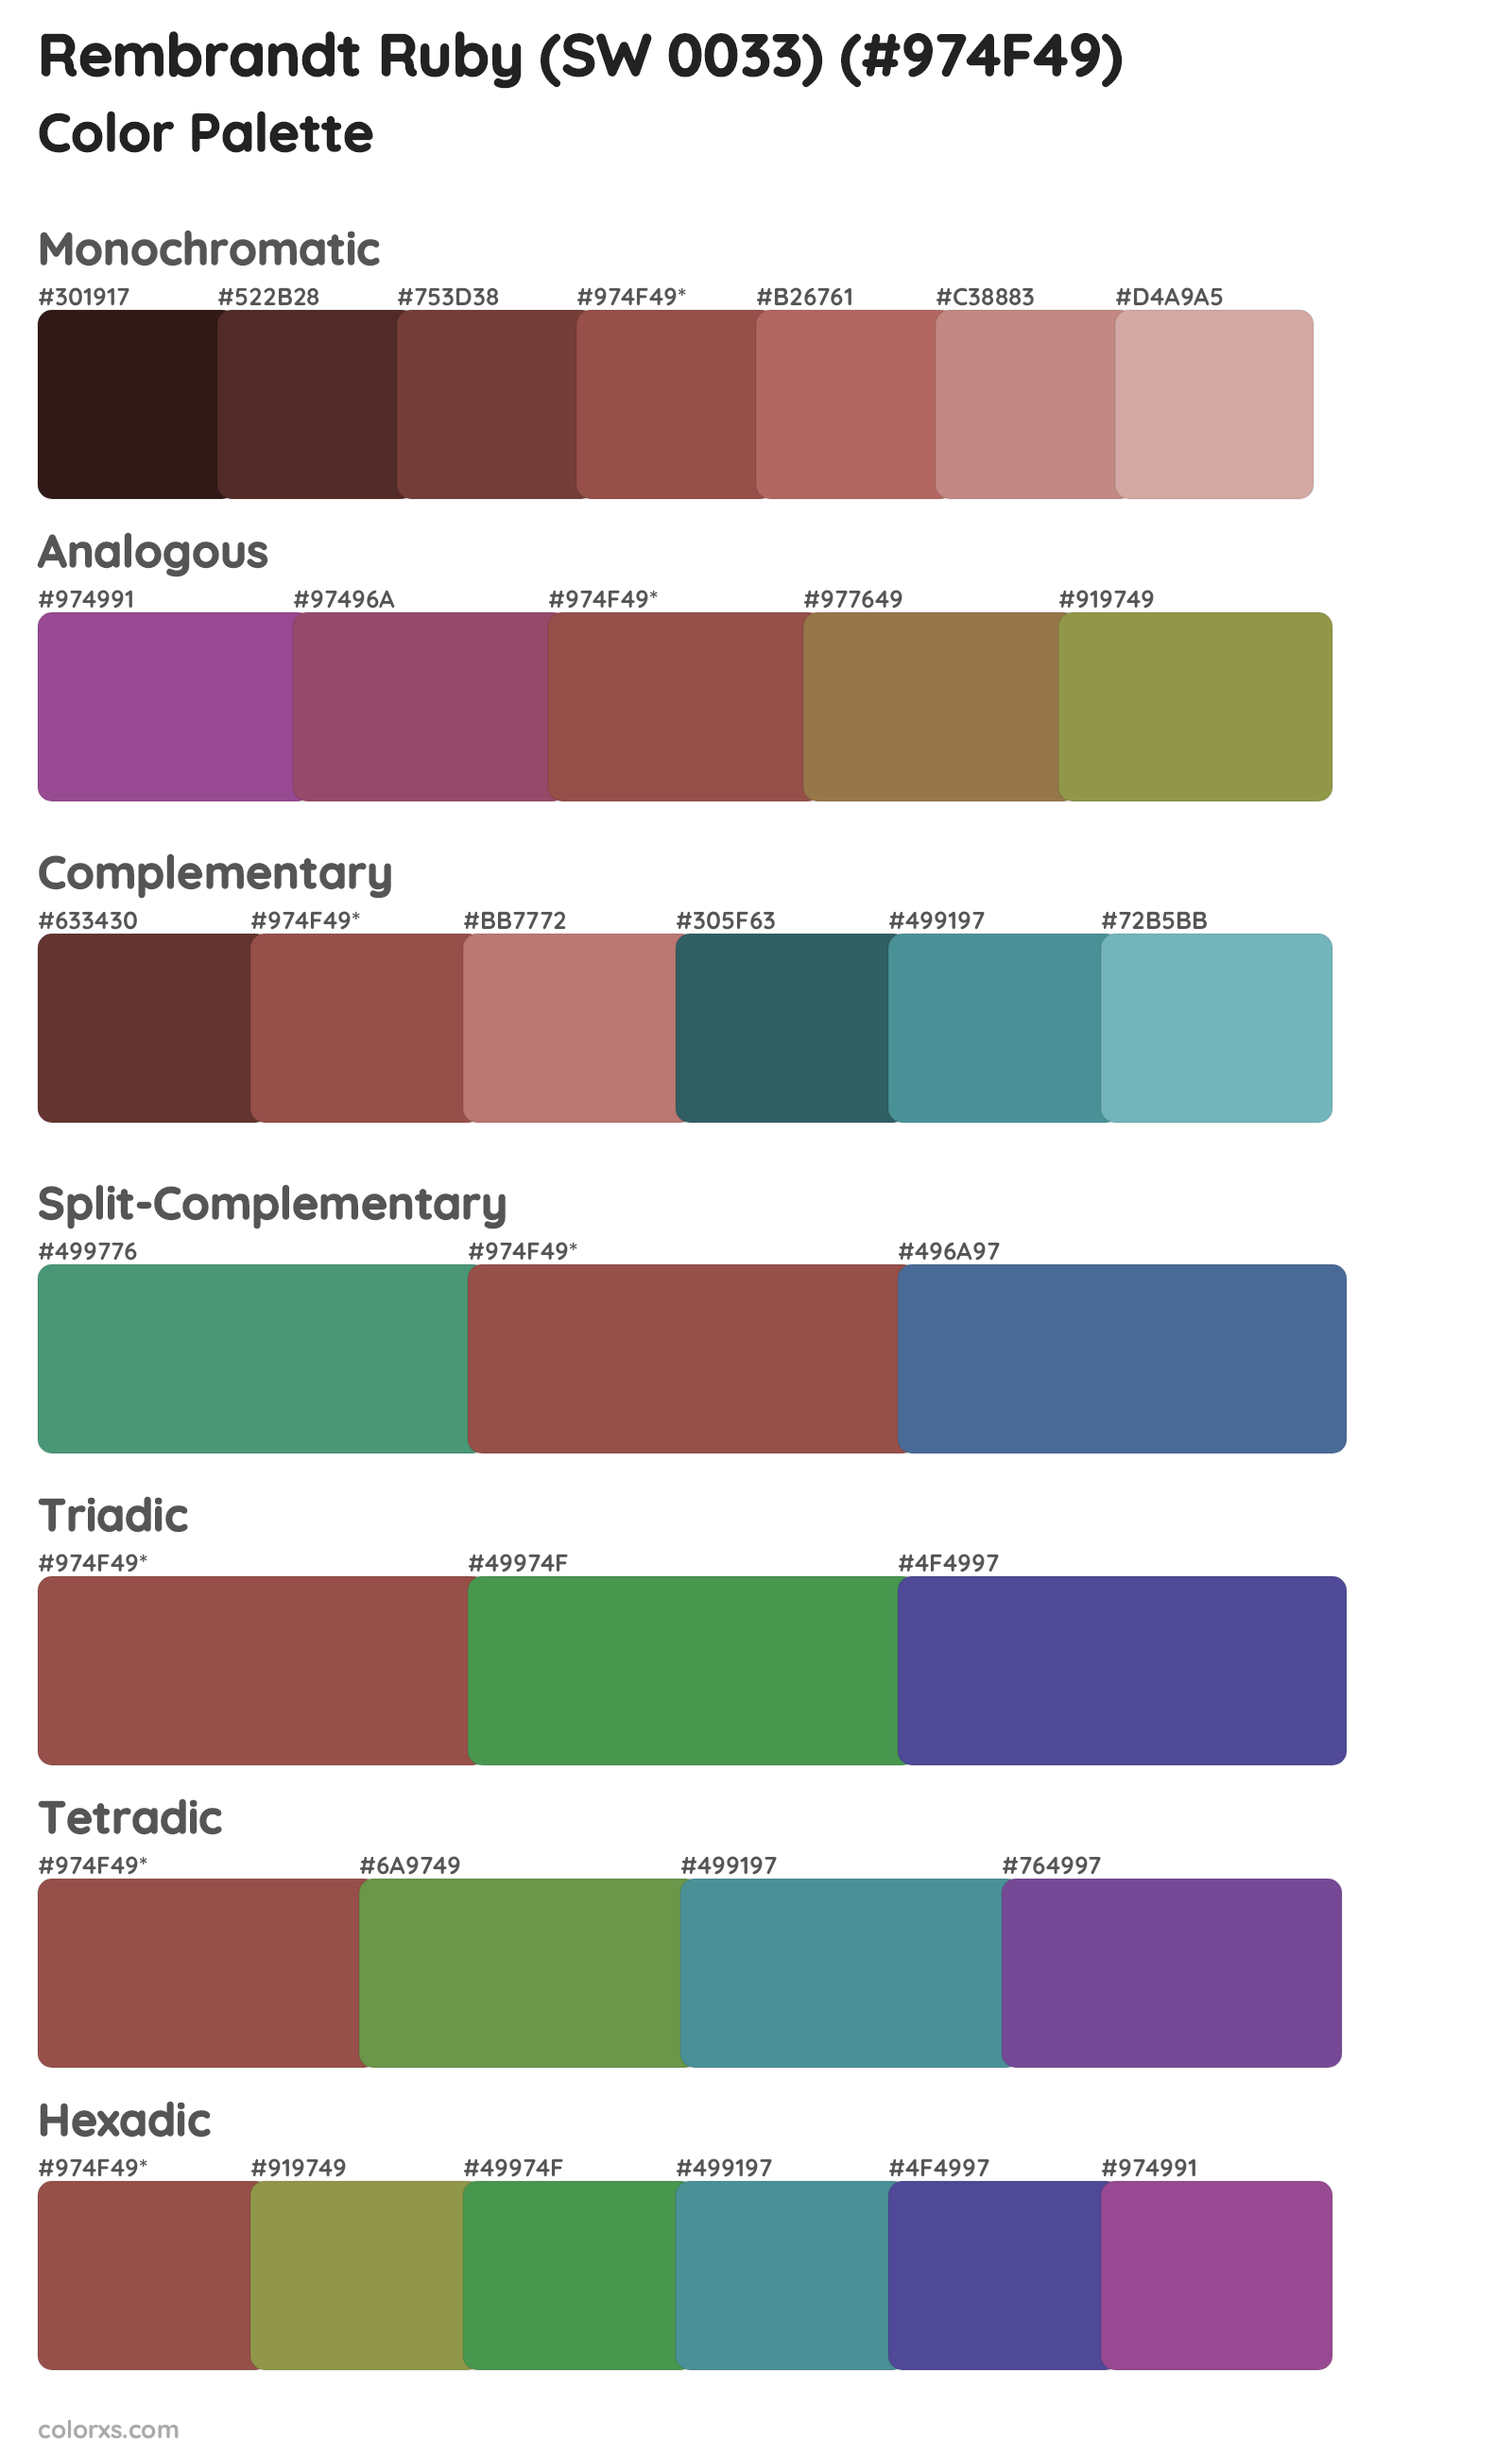 Rembrandt Ruby (SW 0033) Color Scheme Palettes